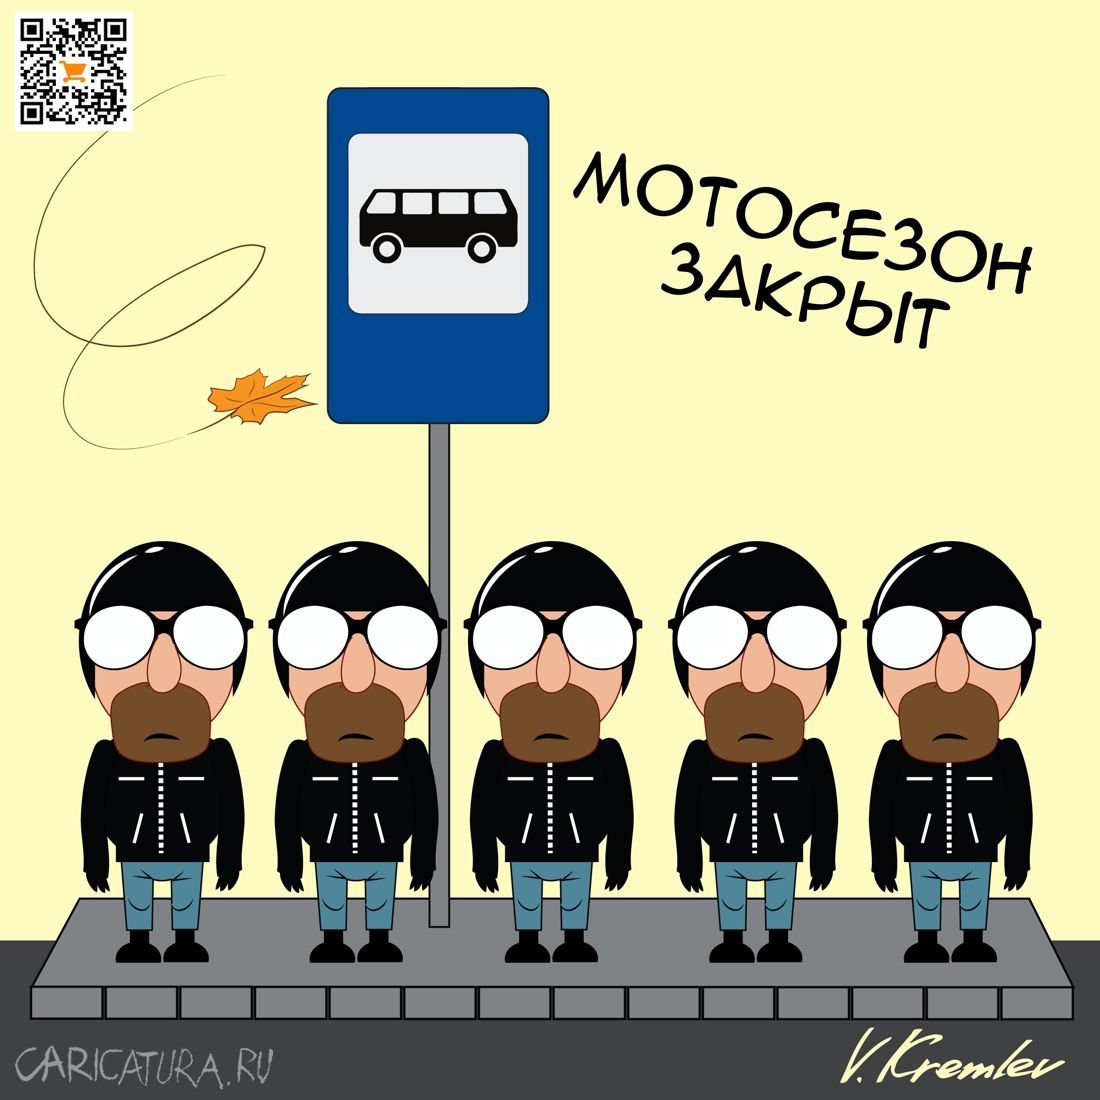 Карикатура "Мотосезон закрыт", Владимир Кремлёв